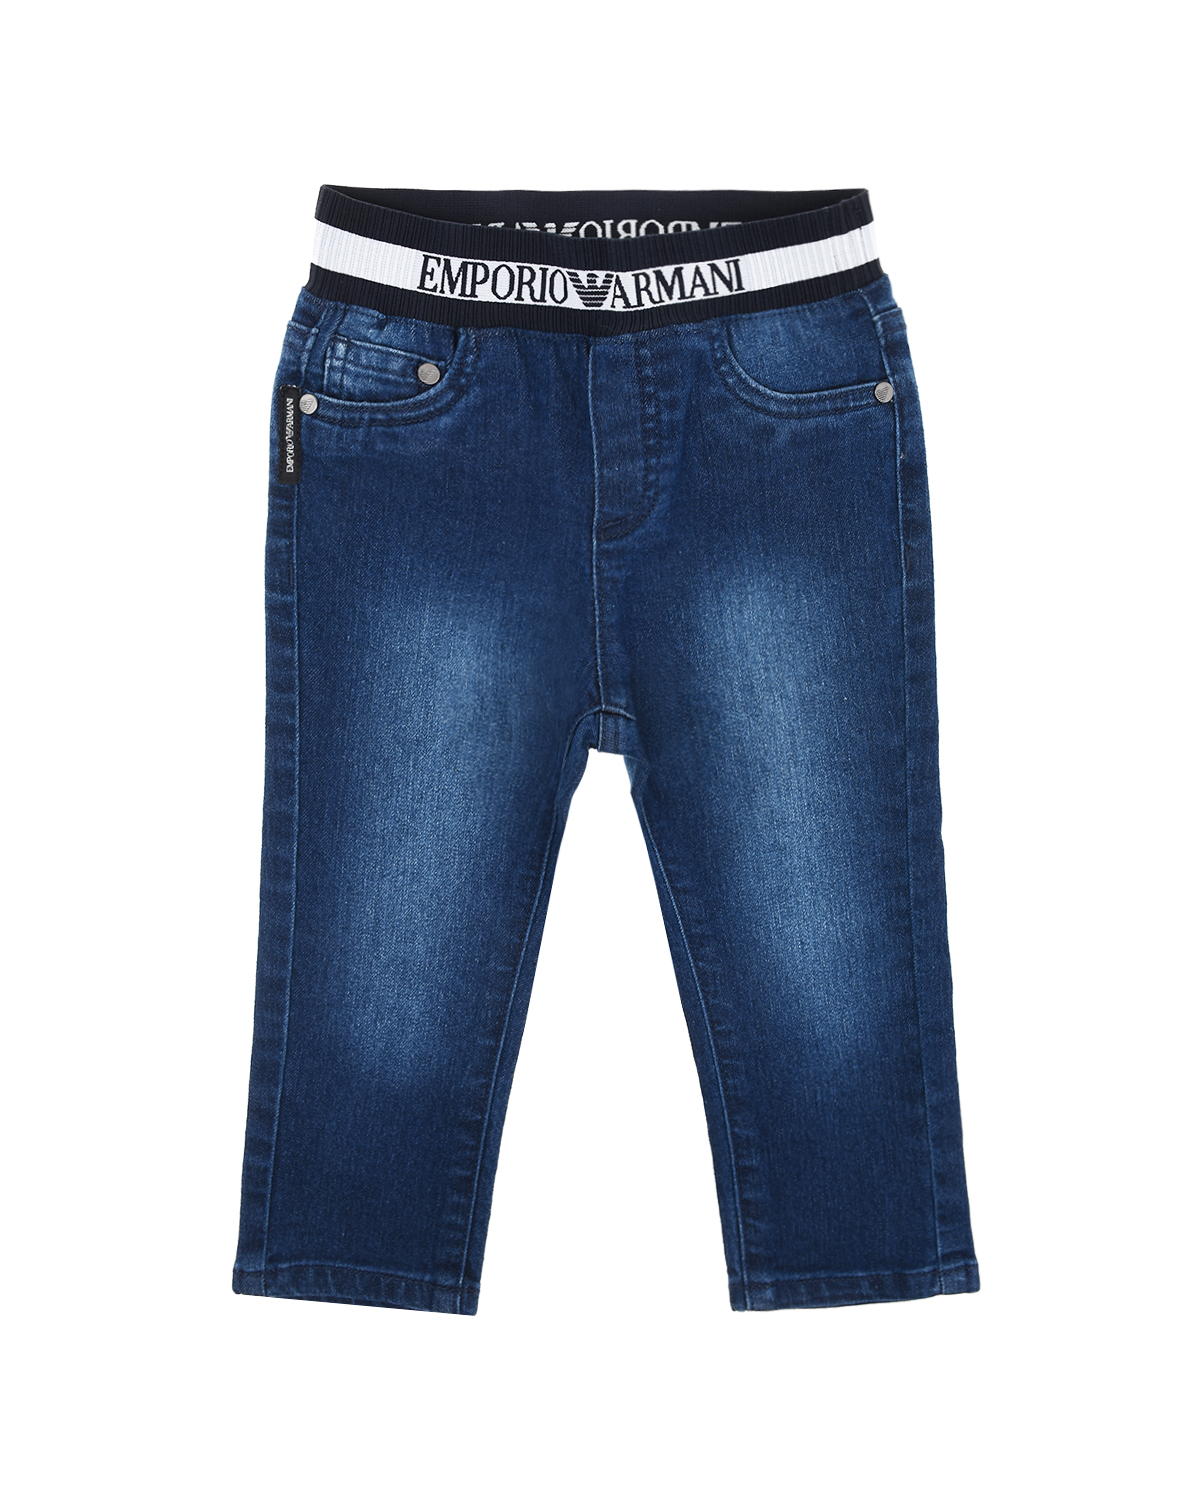 Синие джинсы с поясом-резинкой Emporio Armani детские - фото 1